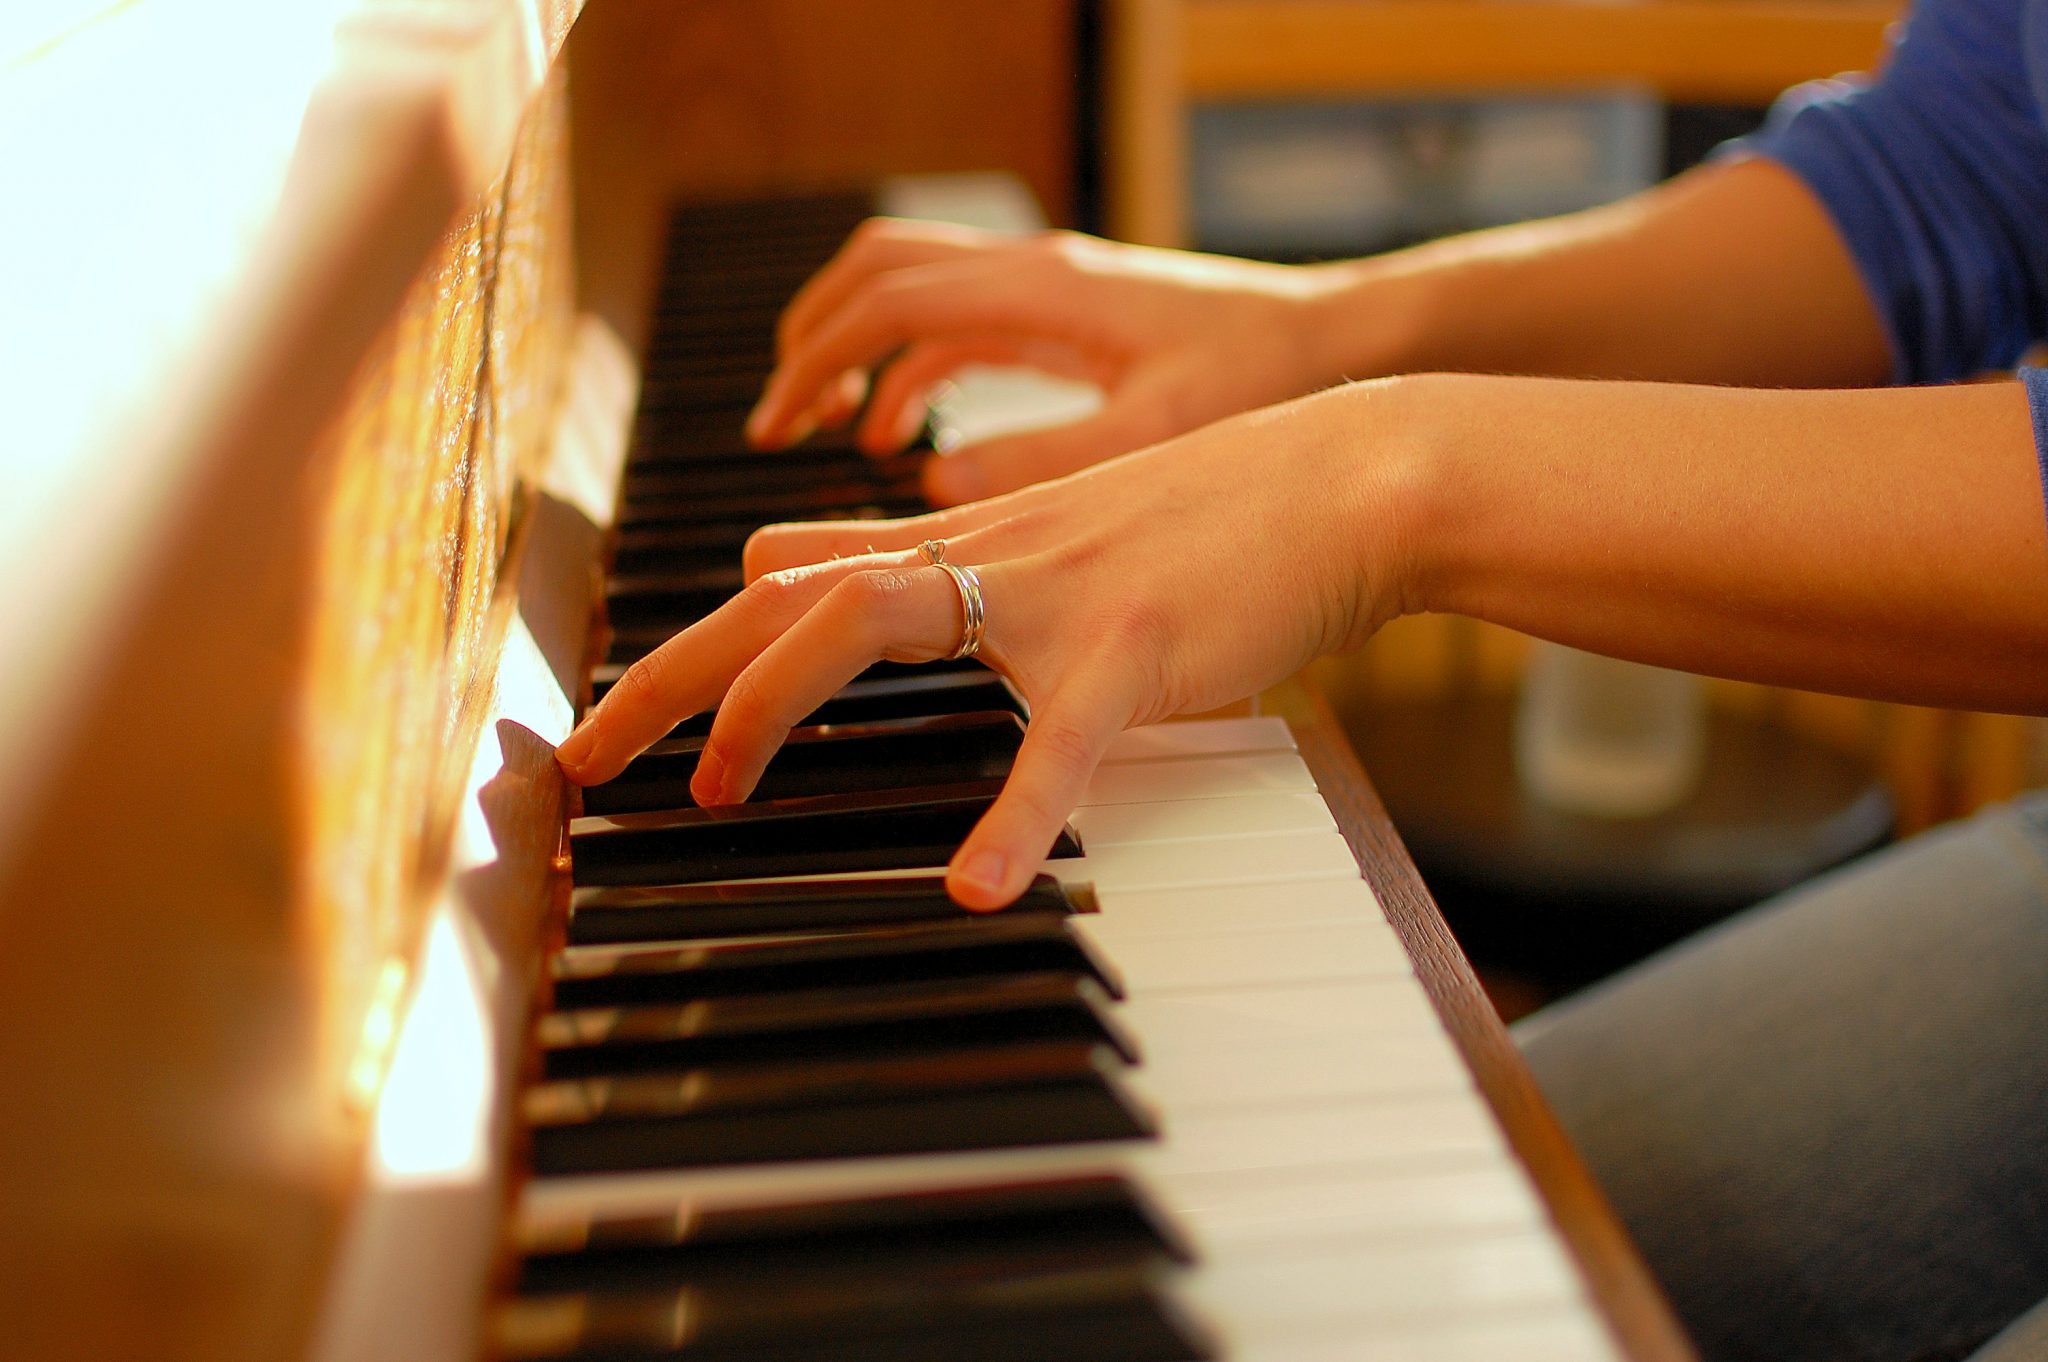 Nghiên cứu các nốt nhạc và vị trí để tay trên piano